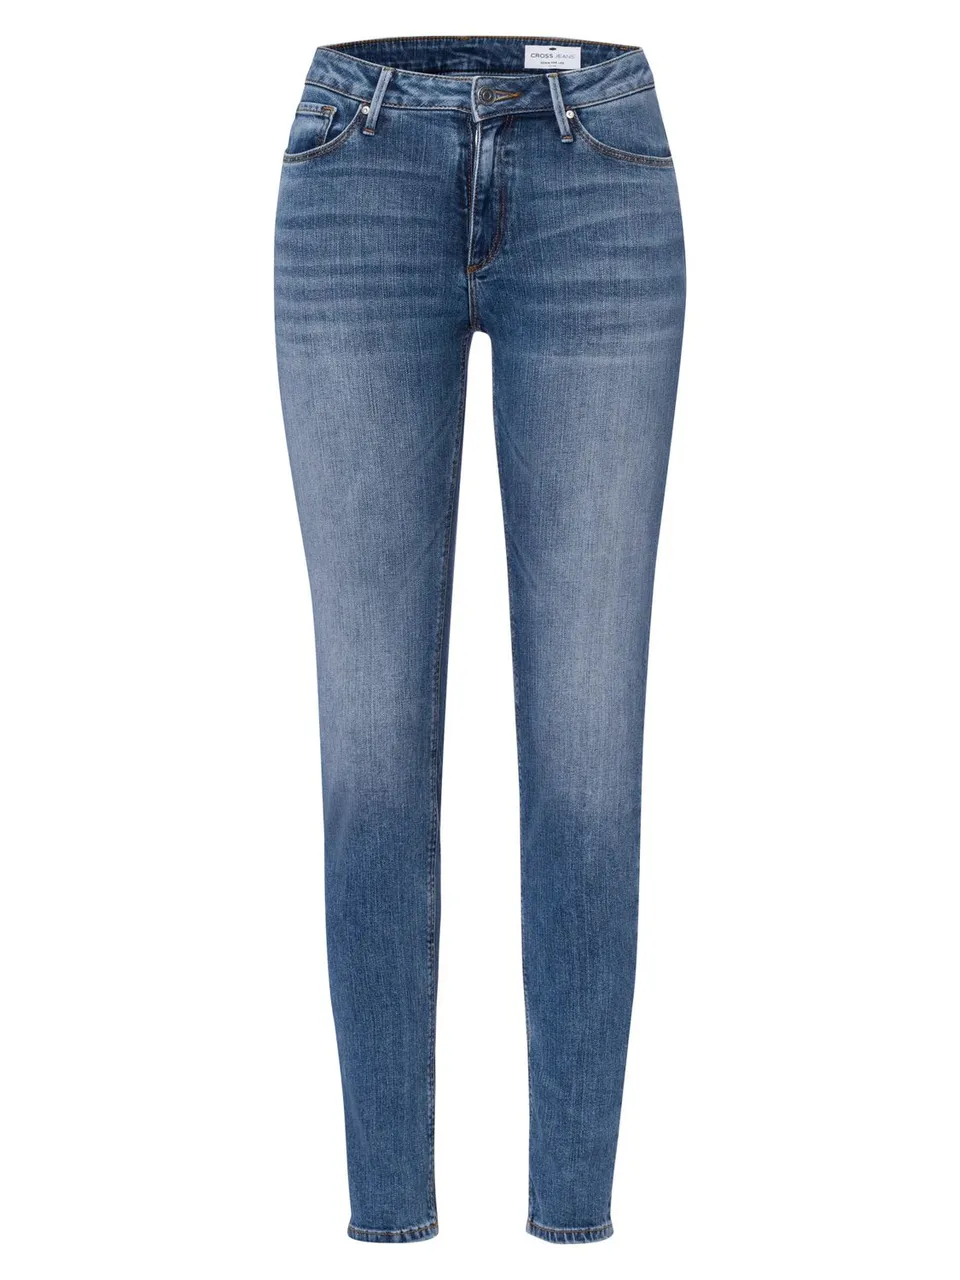 Cross Jeans Damen Jeans ALAN - Skinny Fit - Blau - Sea Blue Washed